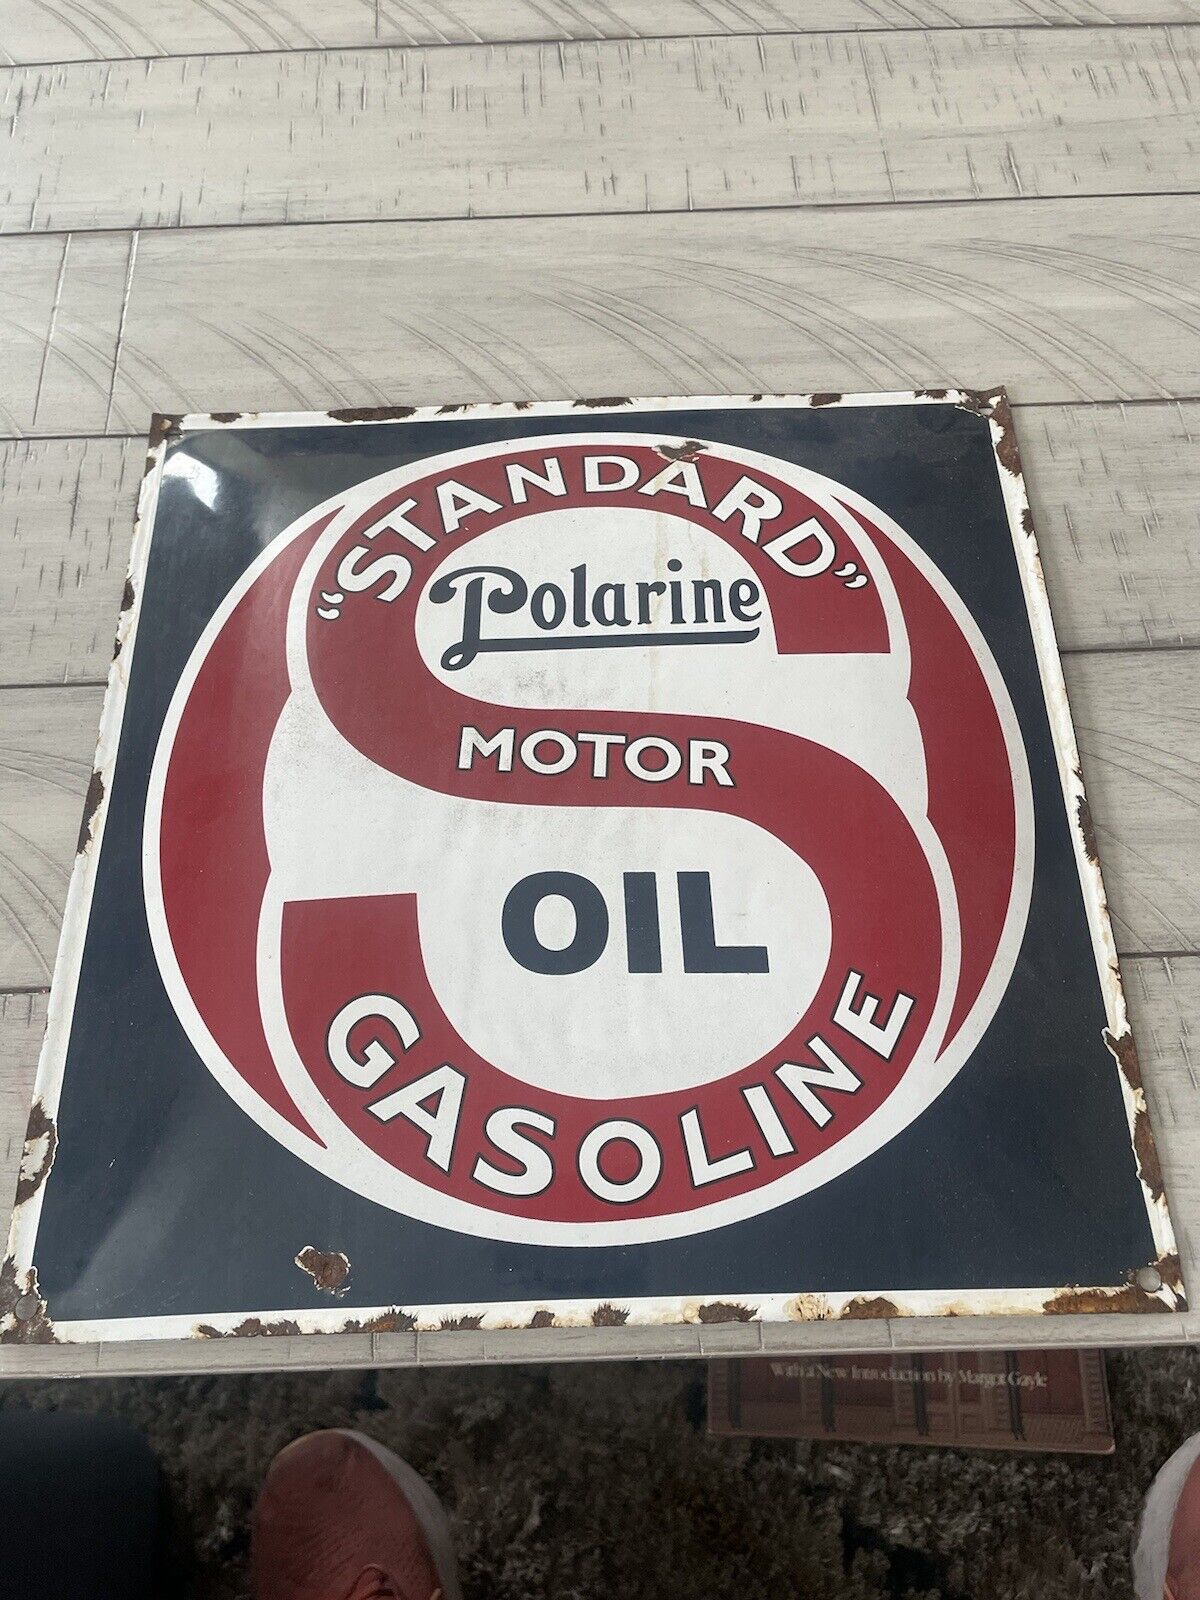 Standard Motor Oil Gasoline Polarine Porcelain Sign Enamel Advertising 12x12